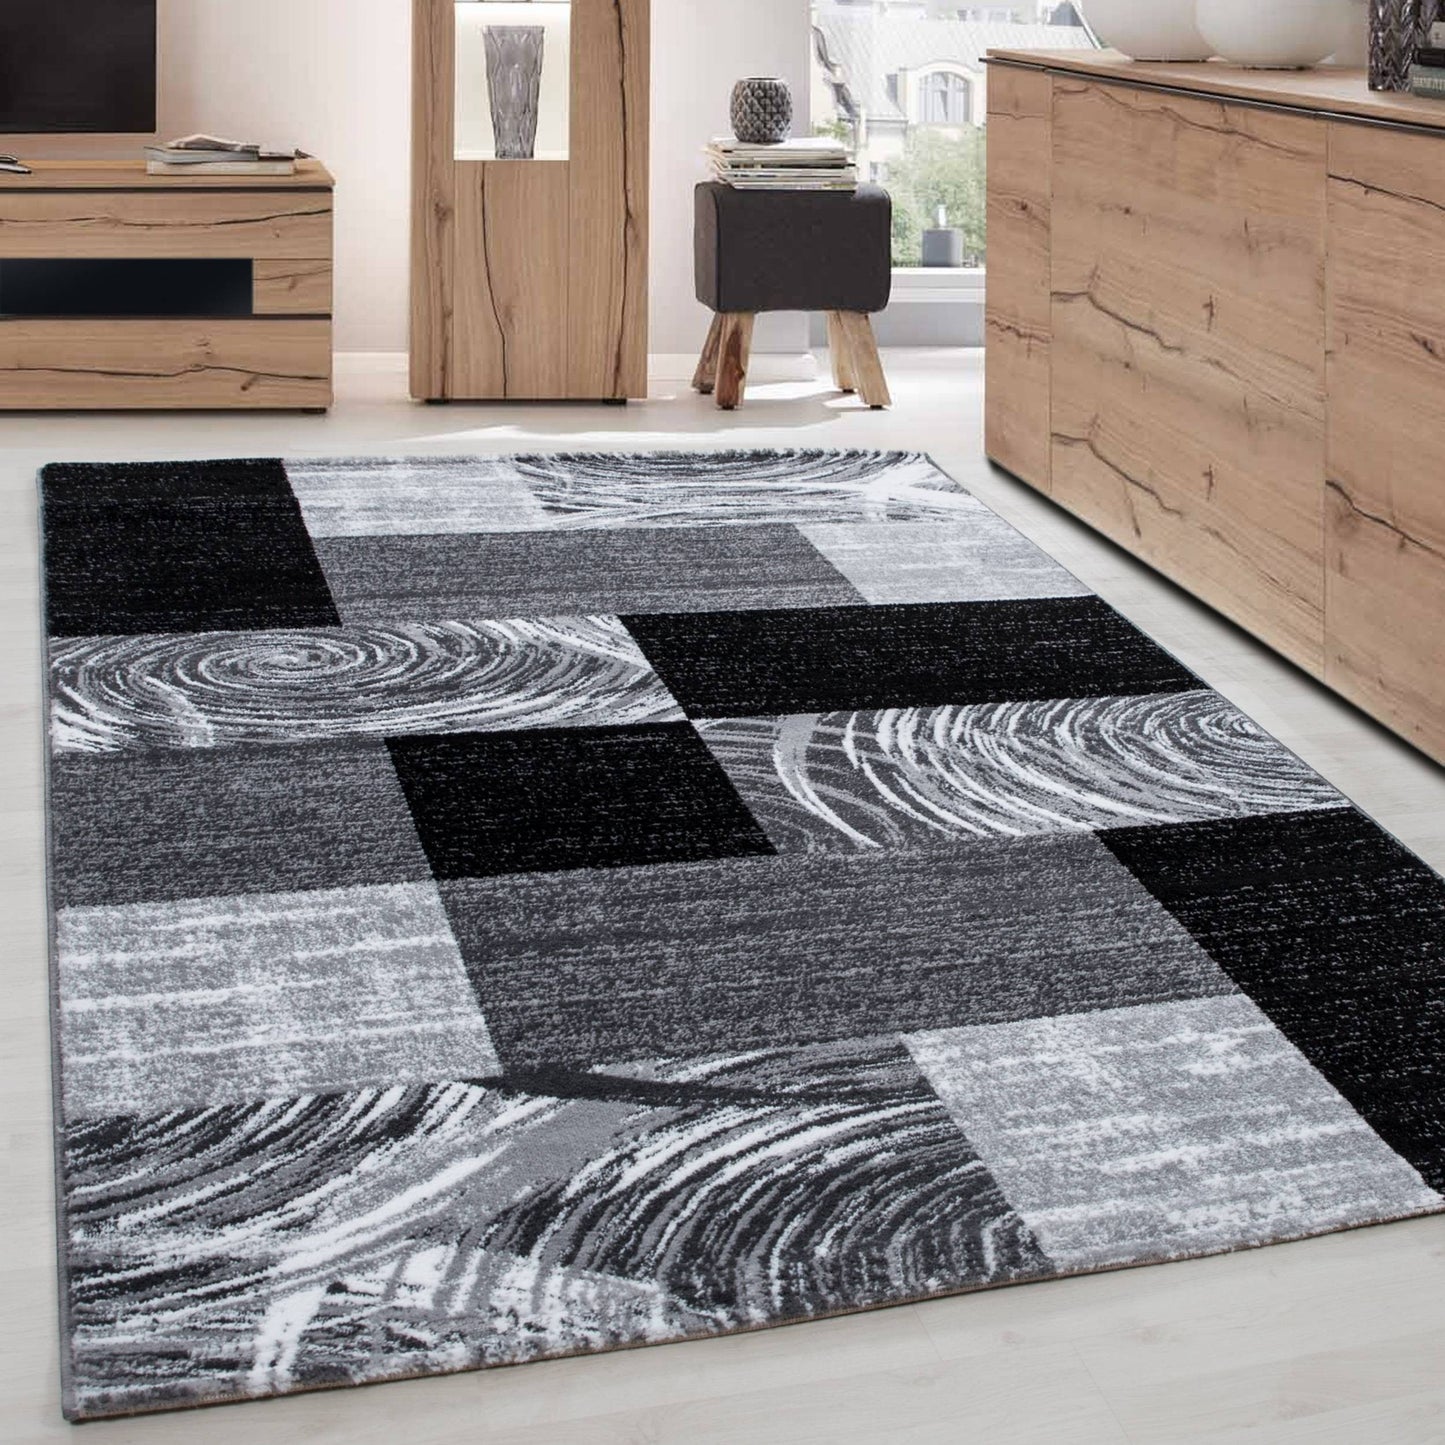 Teppich Modern Designer Wohnzimmer Geometrisch Kariert Muster Schwarz Grau Weiss